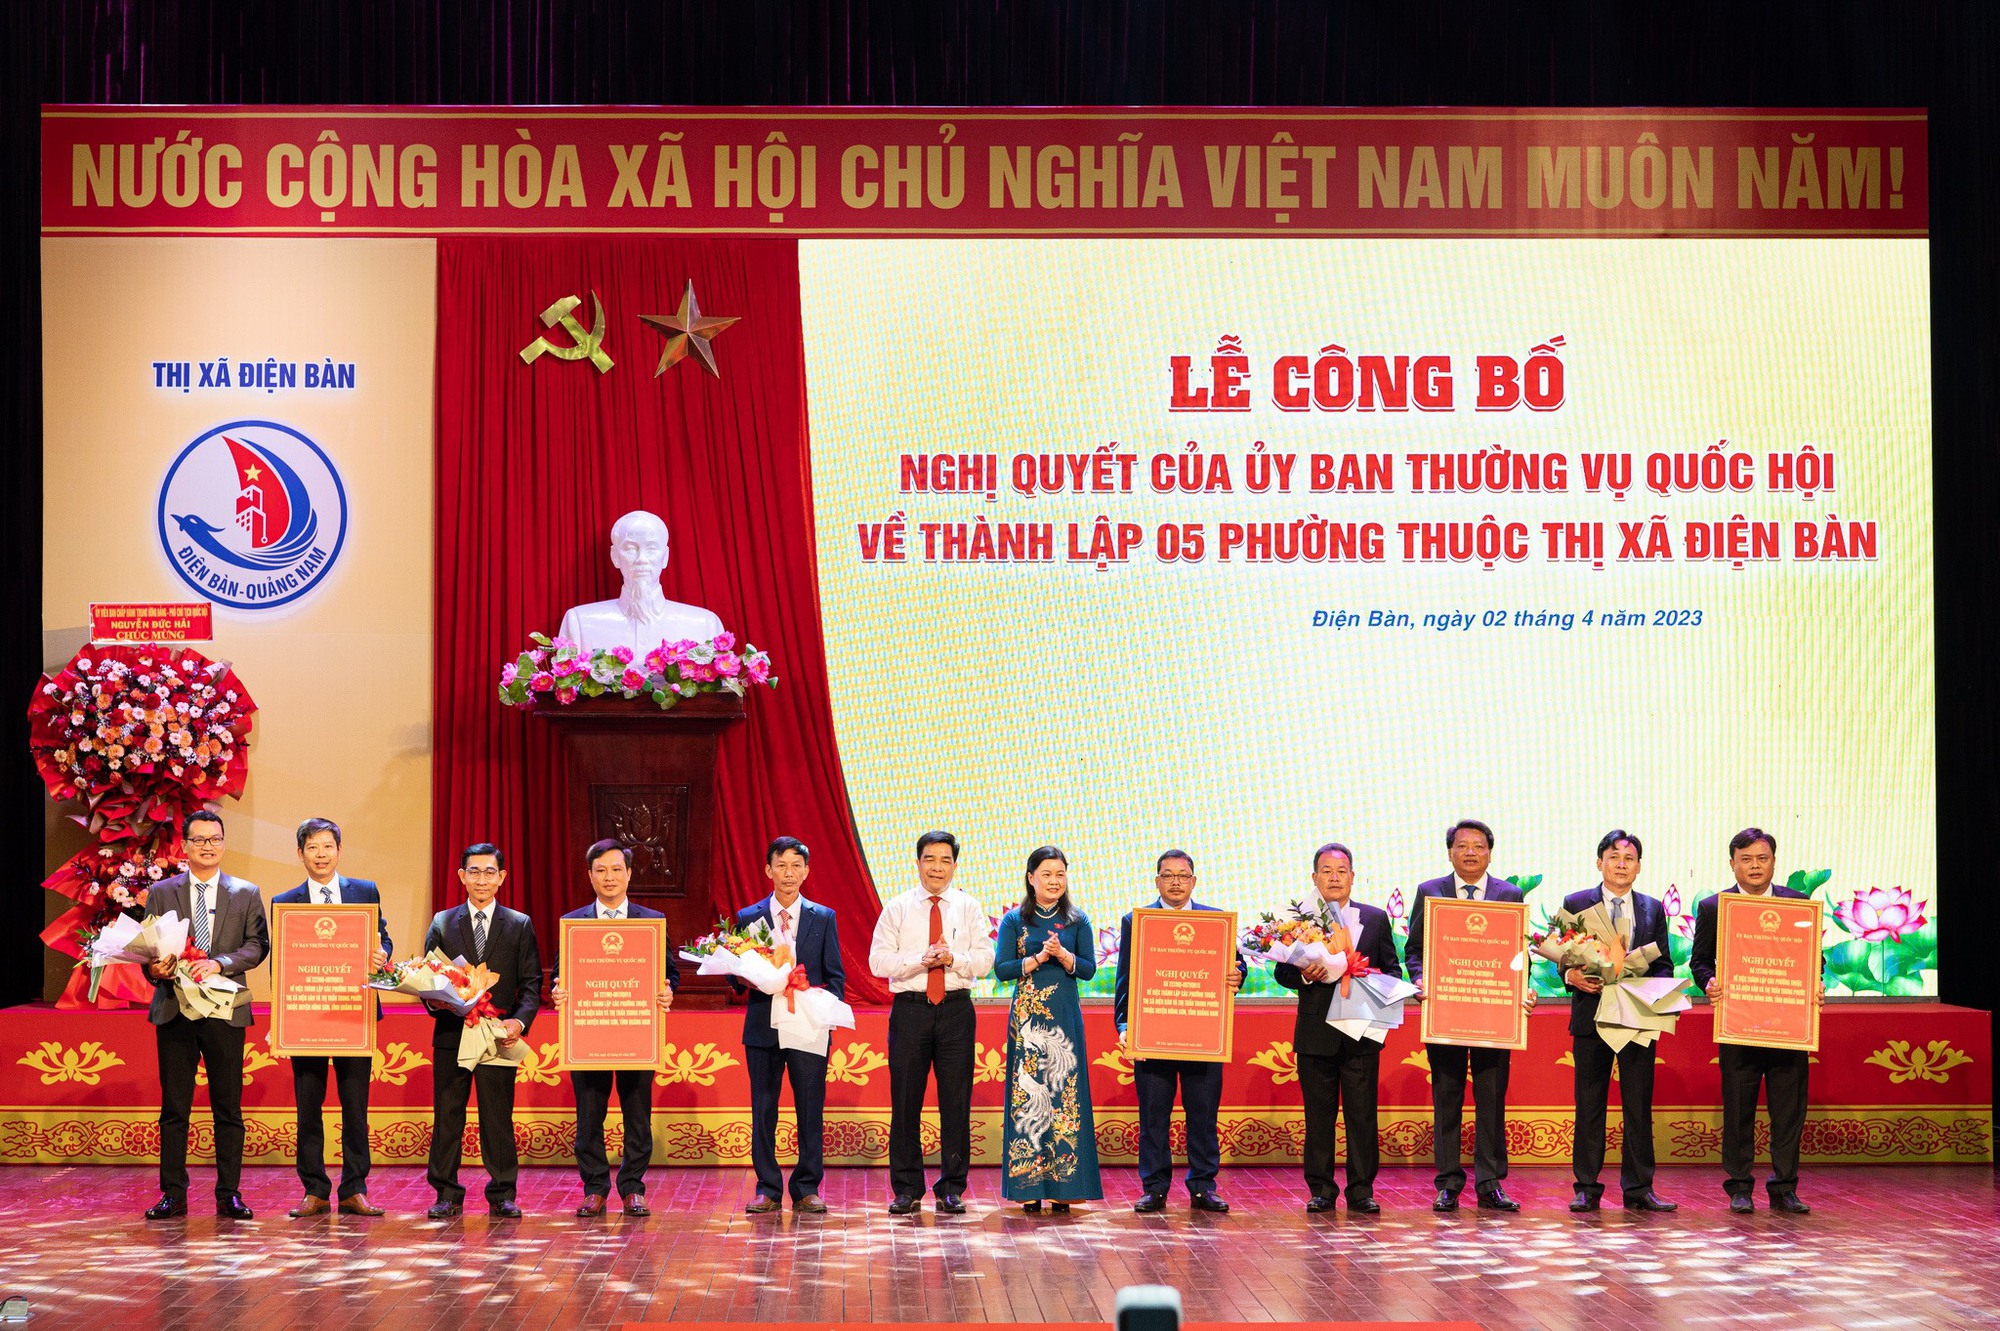 Quảng Nam: Công bố quyết định thành lập 5 phường tại thị xã Điện Bàn - Ảnh 1.